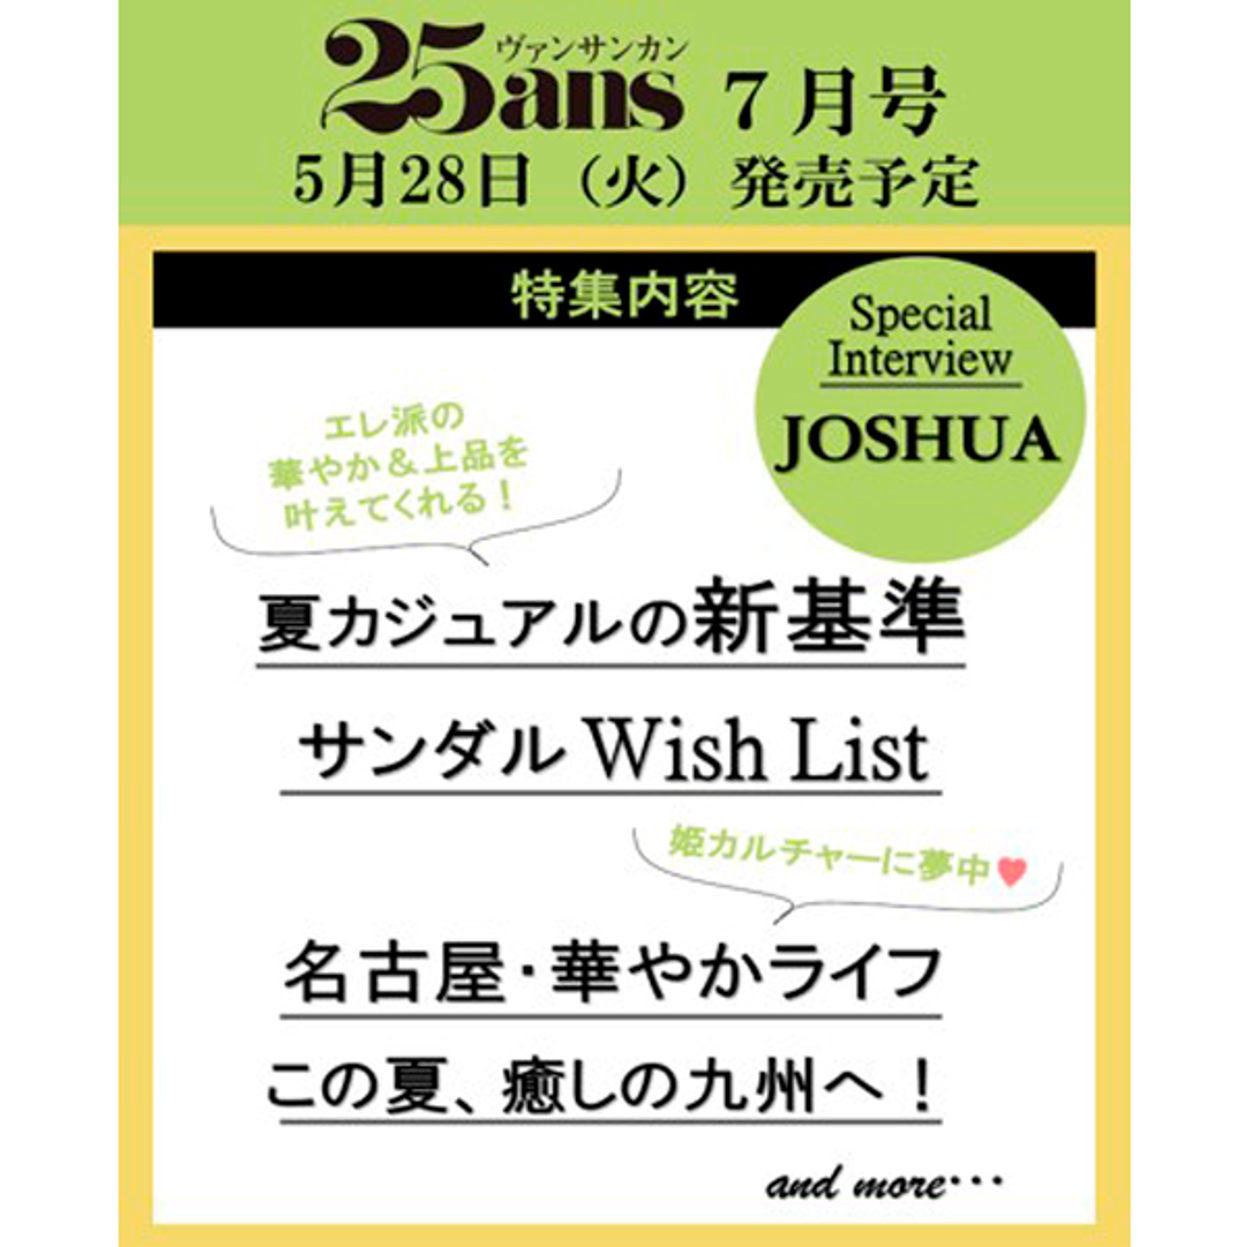 7월호 25ans 일본반 특별호 B형 (표지 : 세븐틴 : 조슈아) (일본잡지)